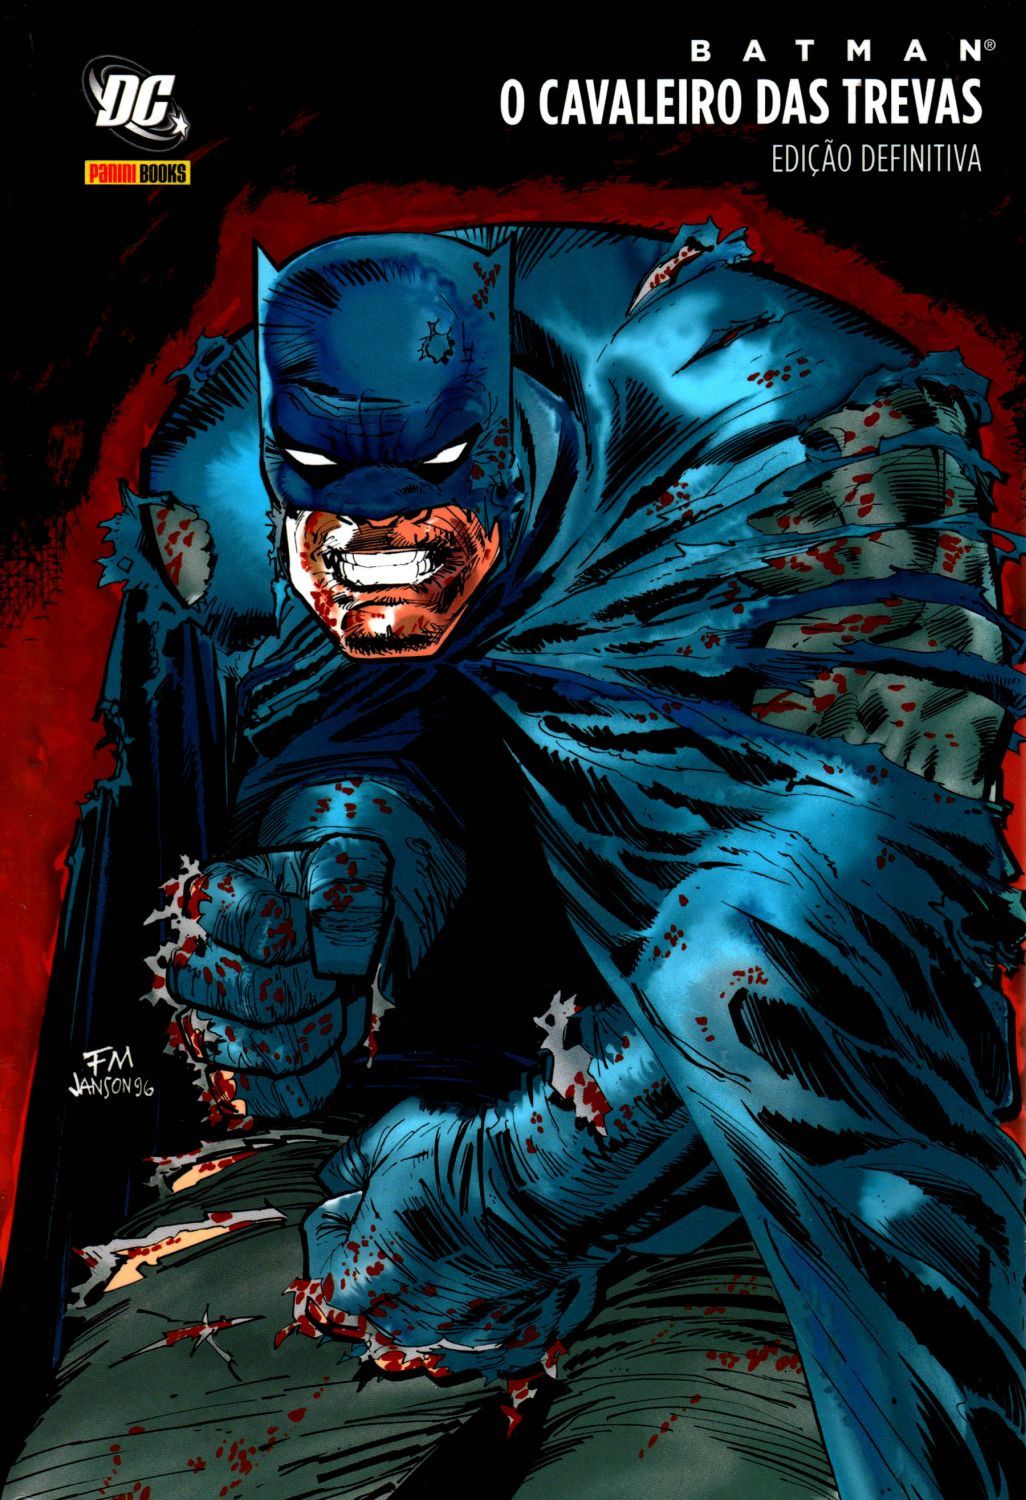 Capa da edição definitiva da HQ 'Batman: O Cavaleiro das Trevas'